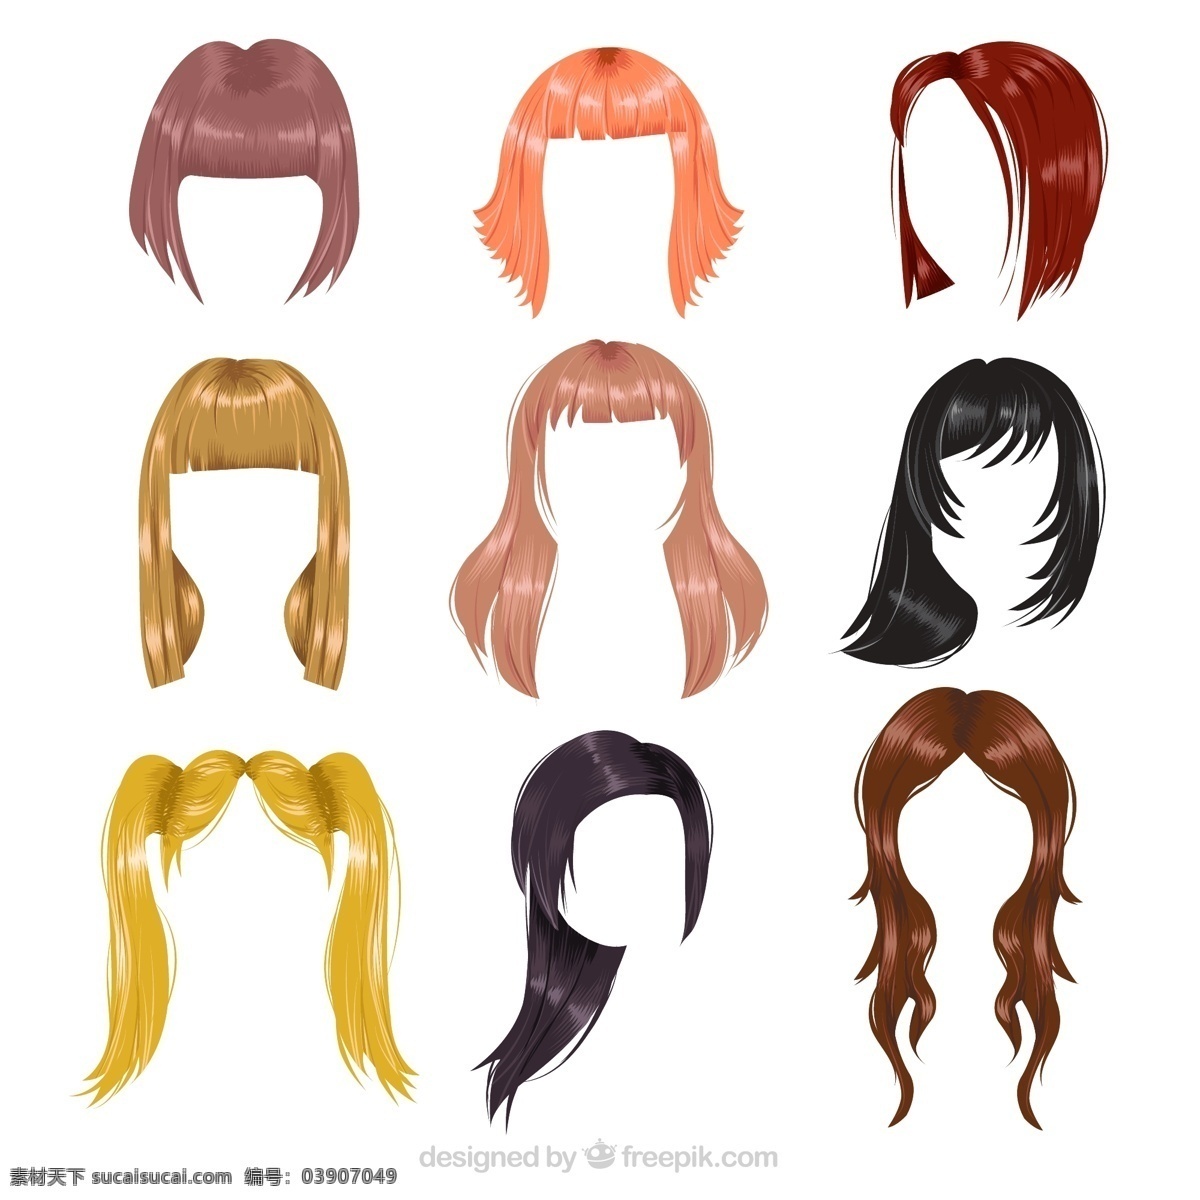 款 彩色 女子 发型设计 矢量图 卡通 染发 发型 长发 卷发 短发 披肩发 白色